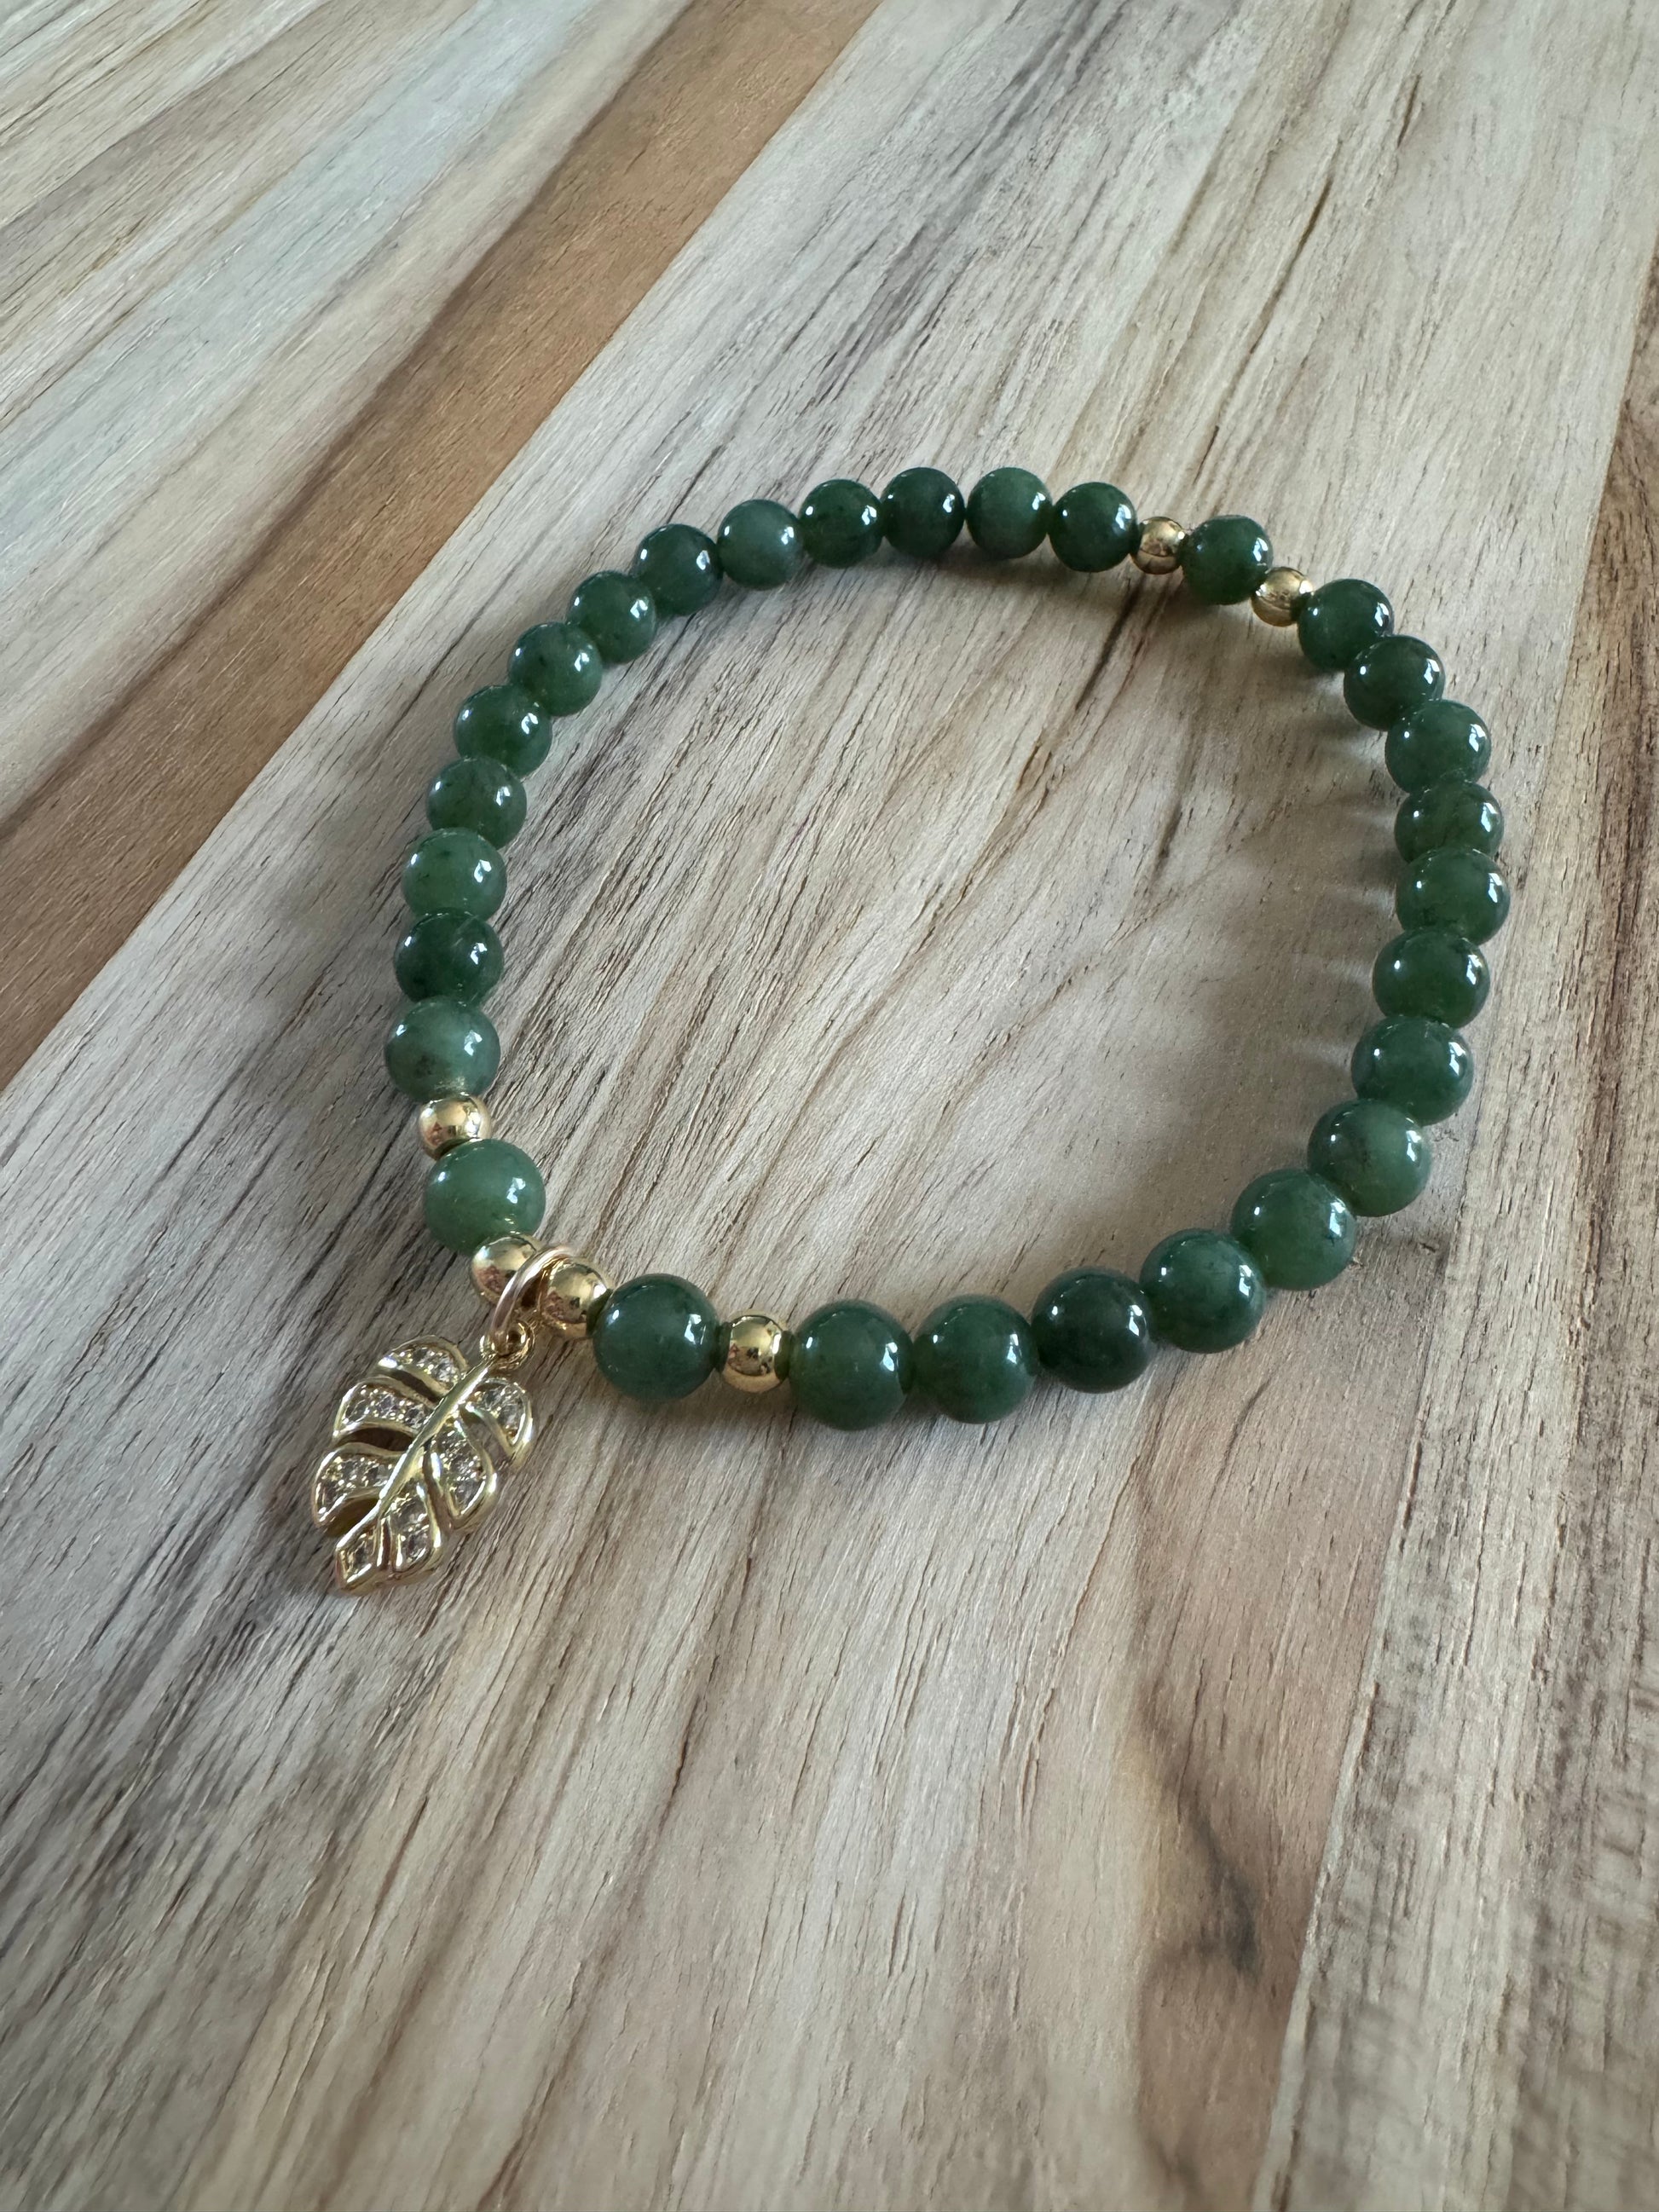 Dainty Nephrite Jade Stretch Bracelet with Gold Leaf Charm - My Urban Gems